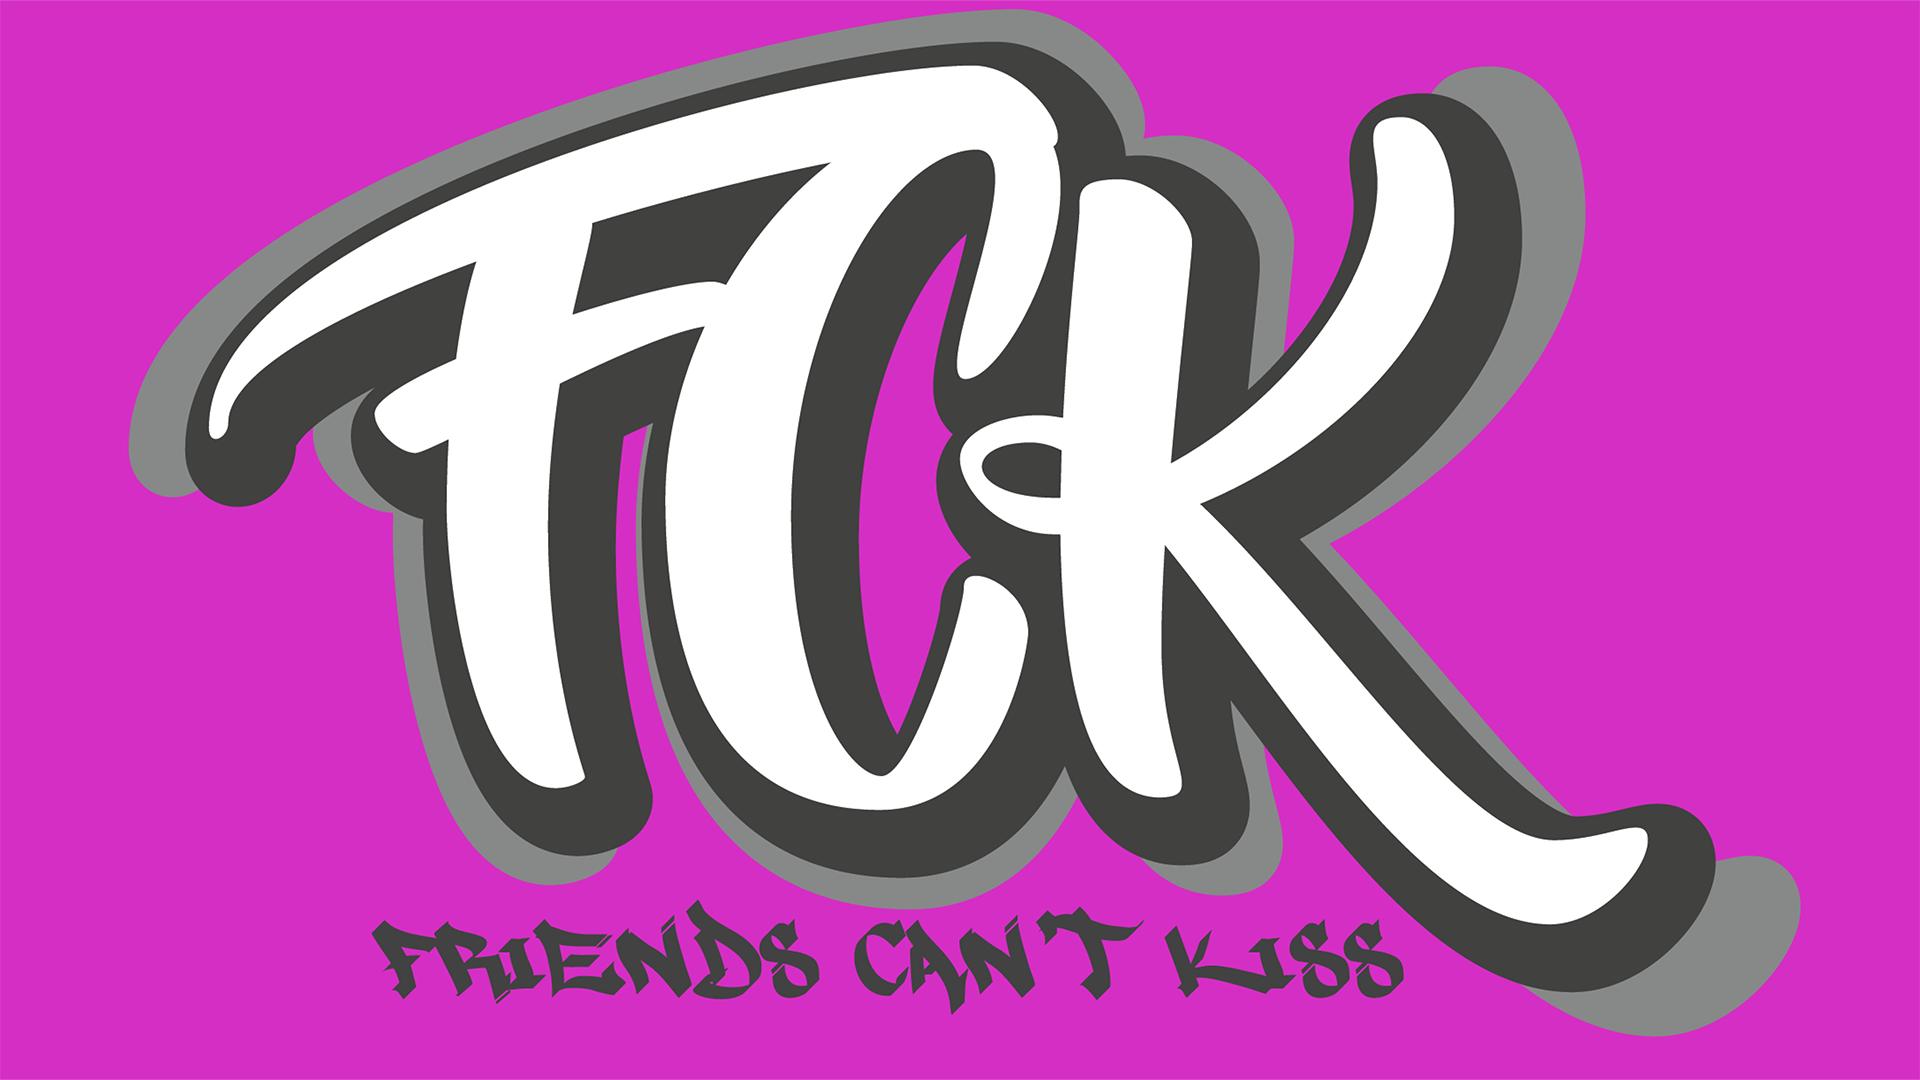 FCK (Friends Can't Kiss)